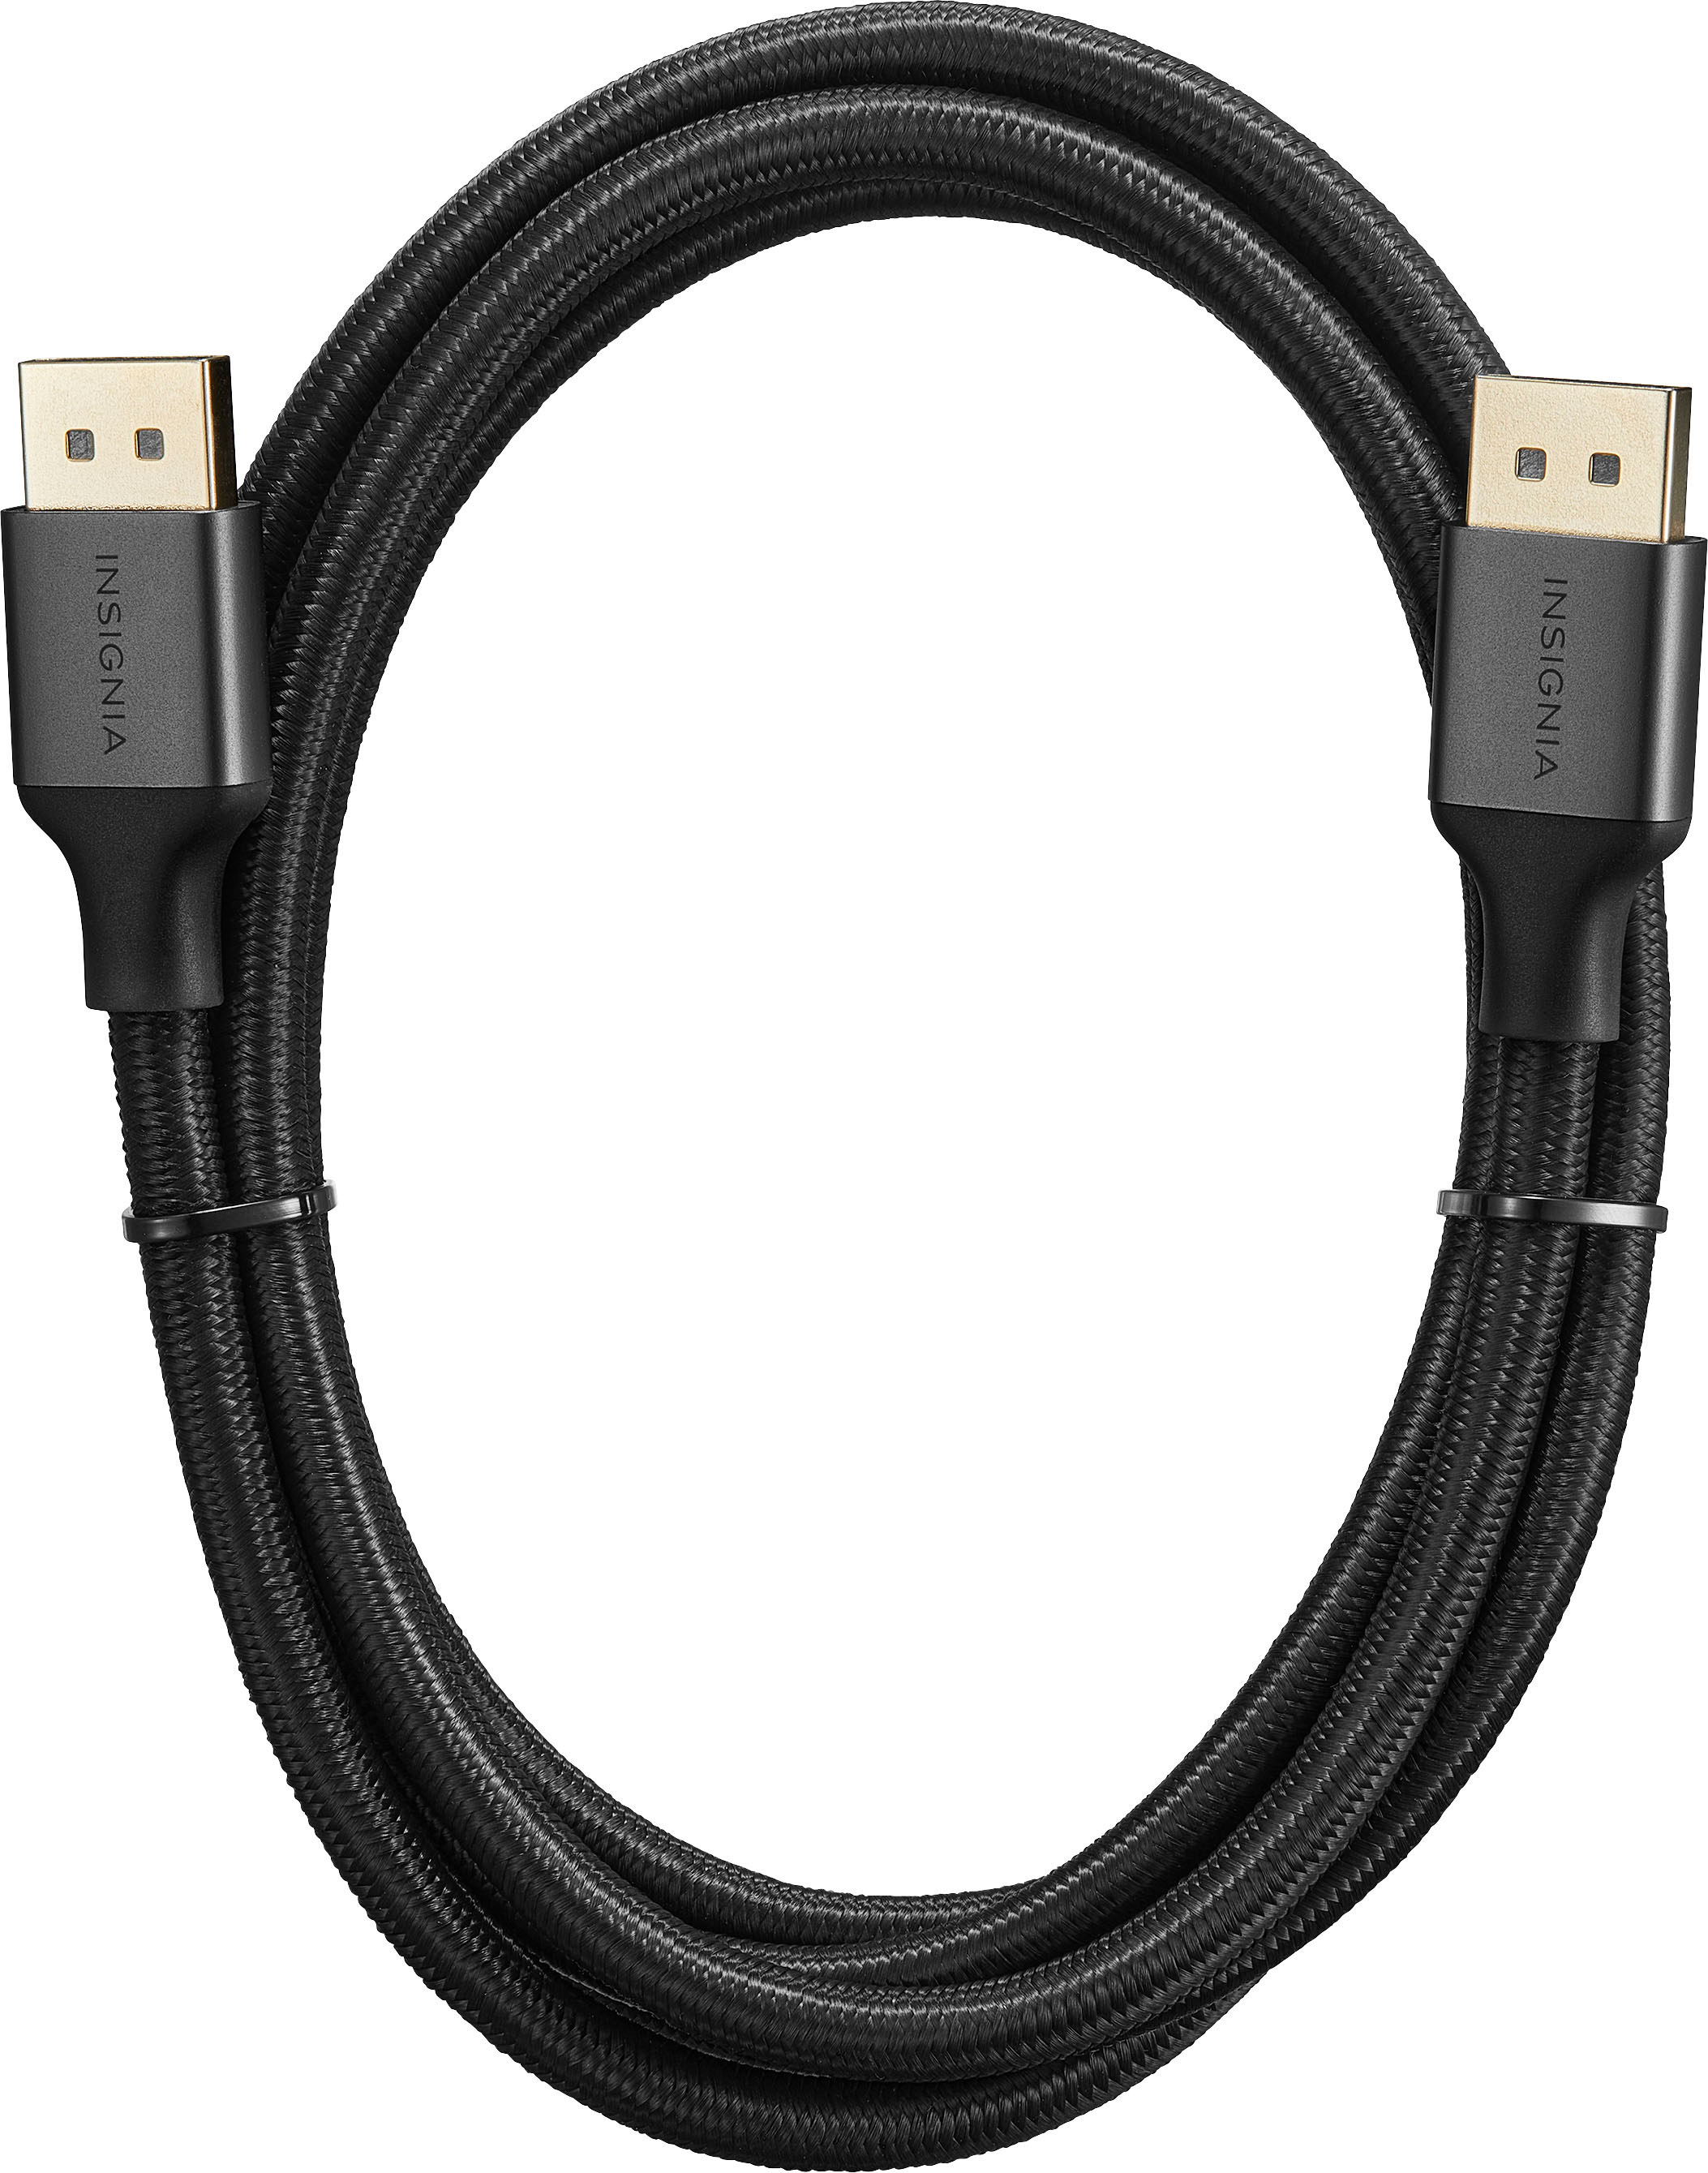 Insignia - 6' DisplayPort Cable - Black